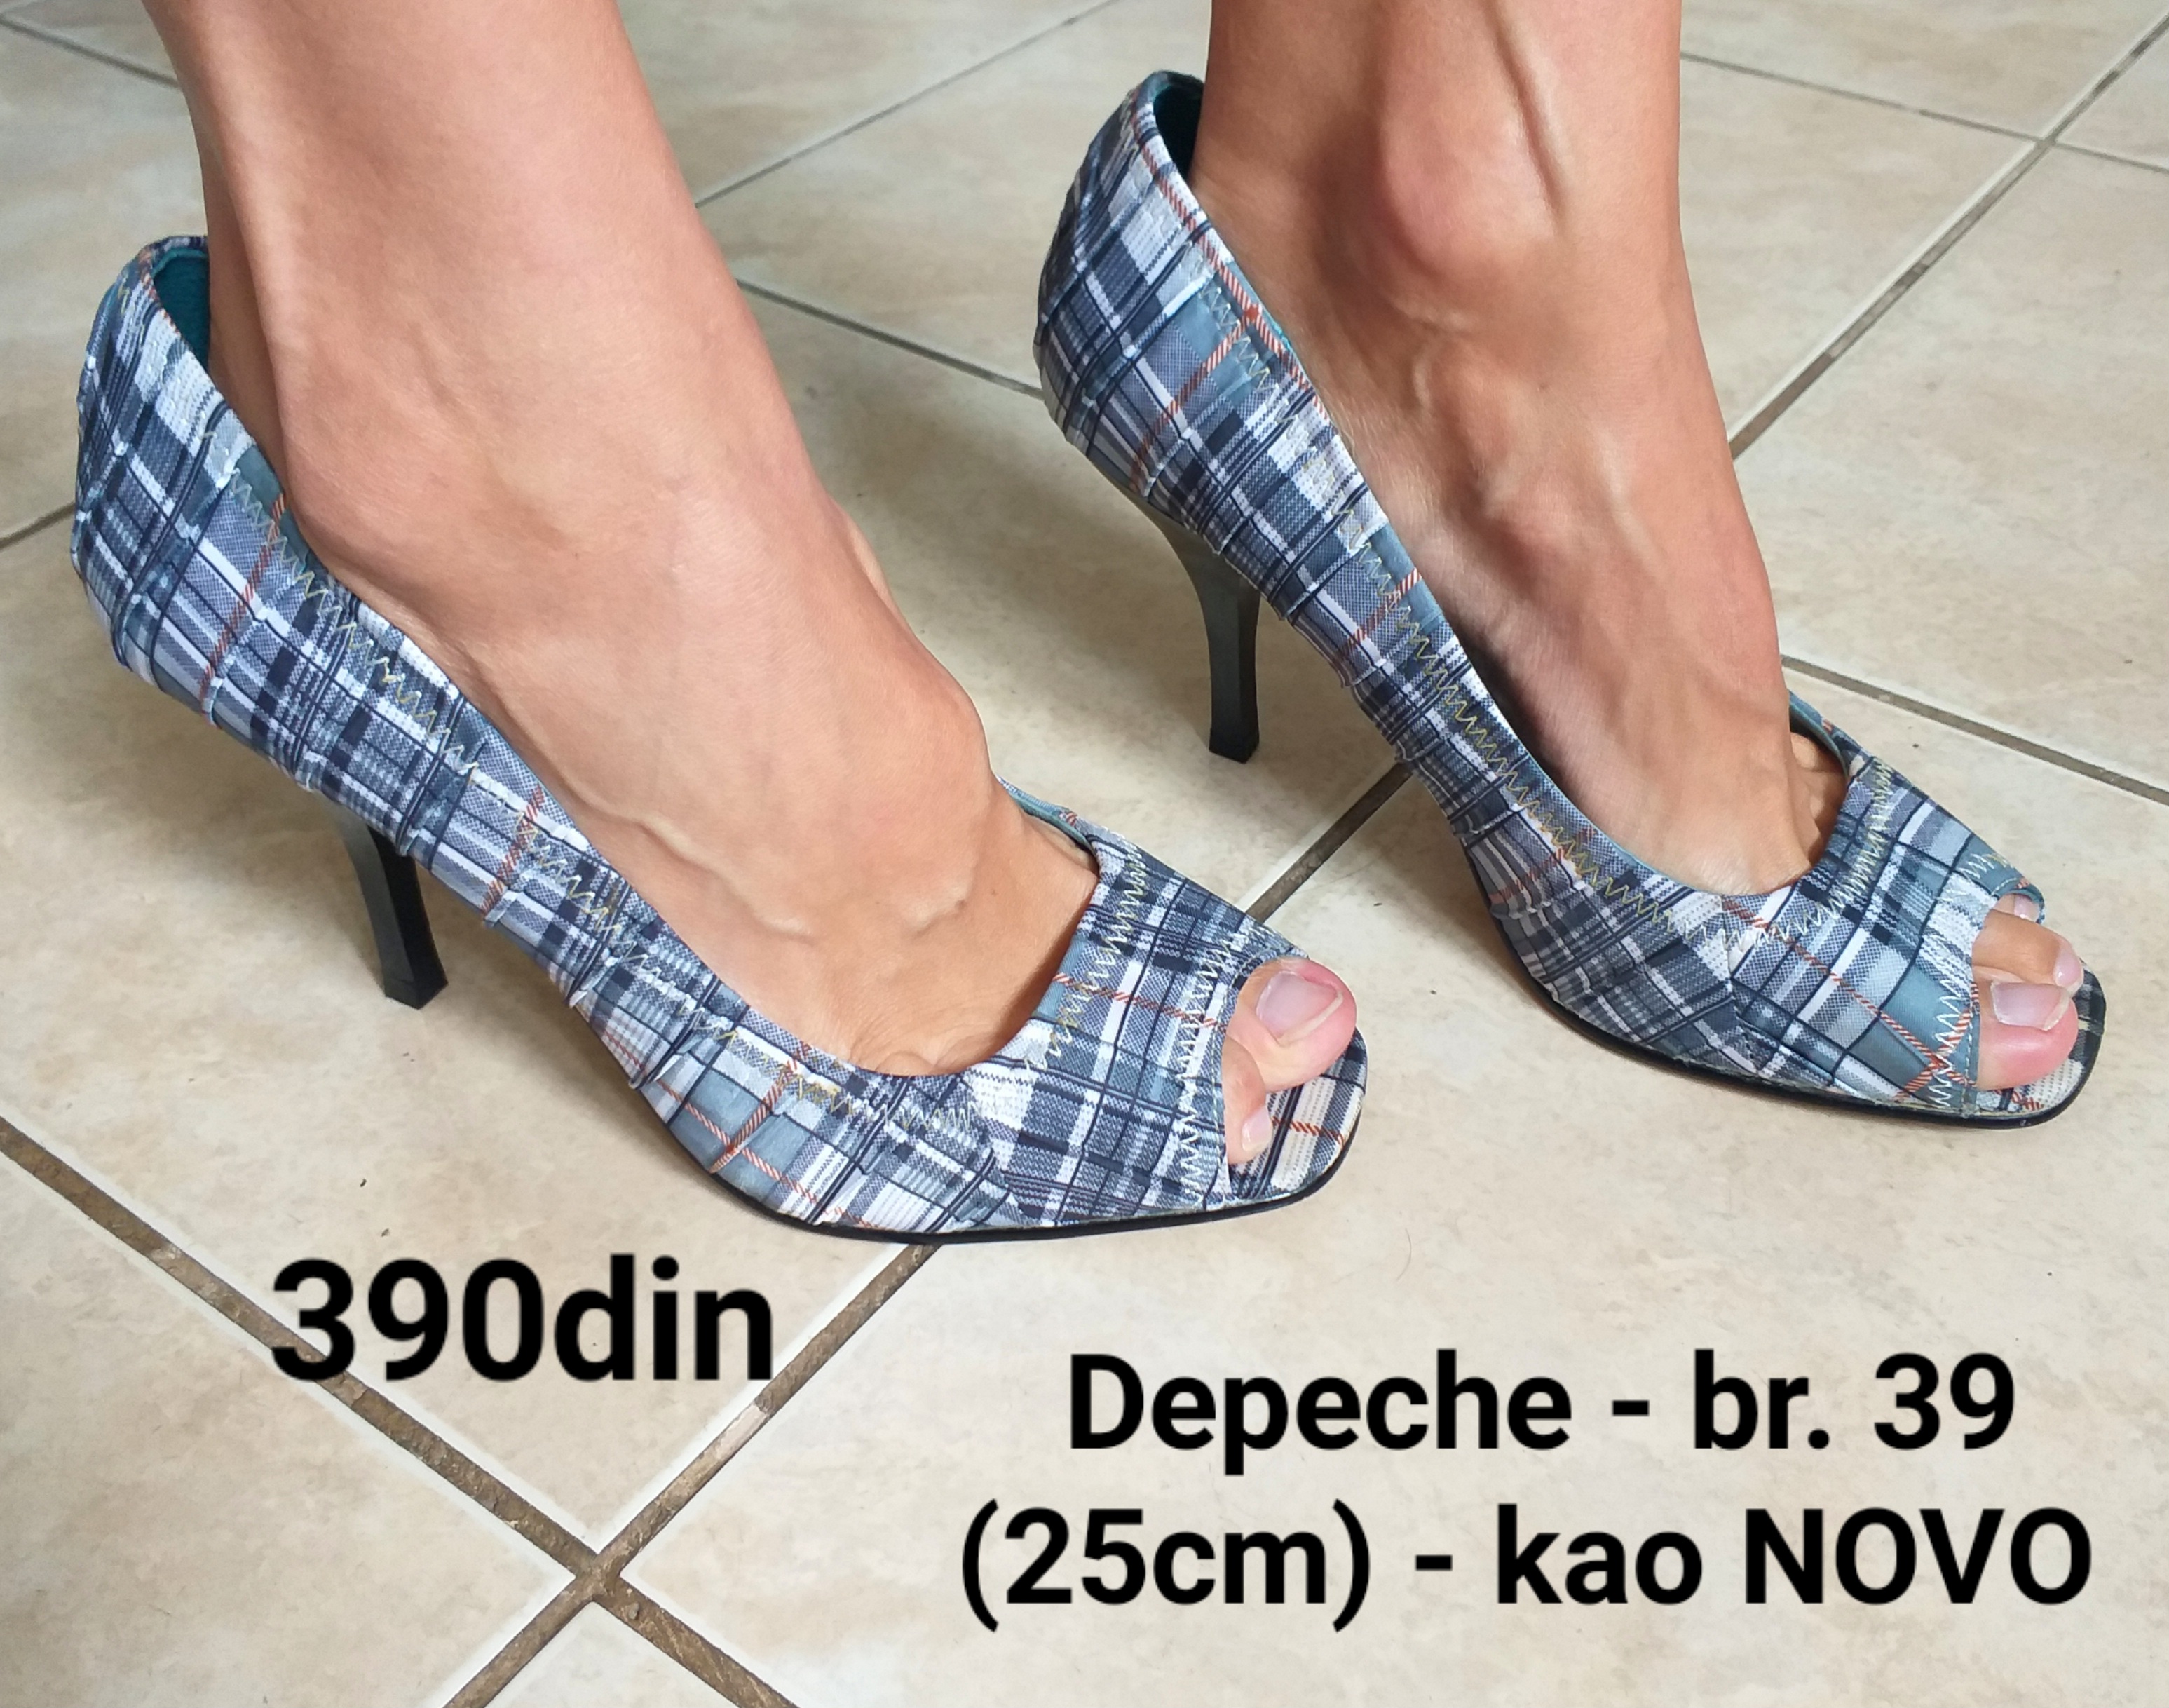 Depeche cipele/sandale na štiklu br.39 - kao NOVO